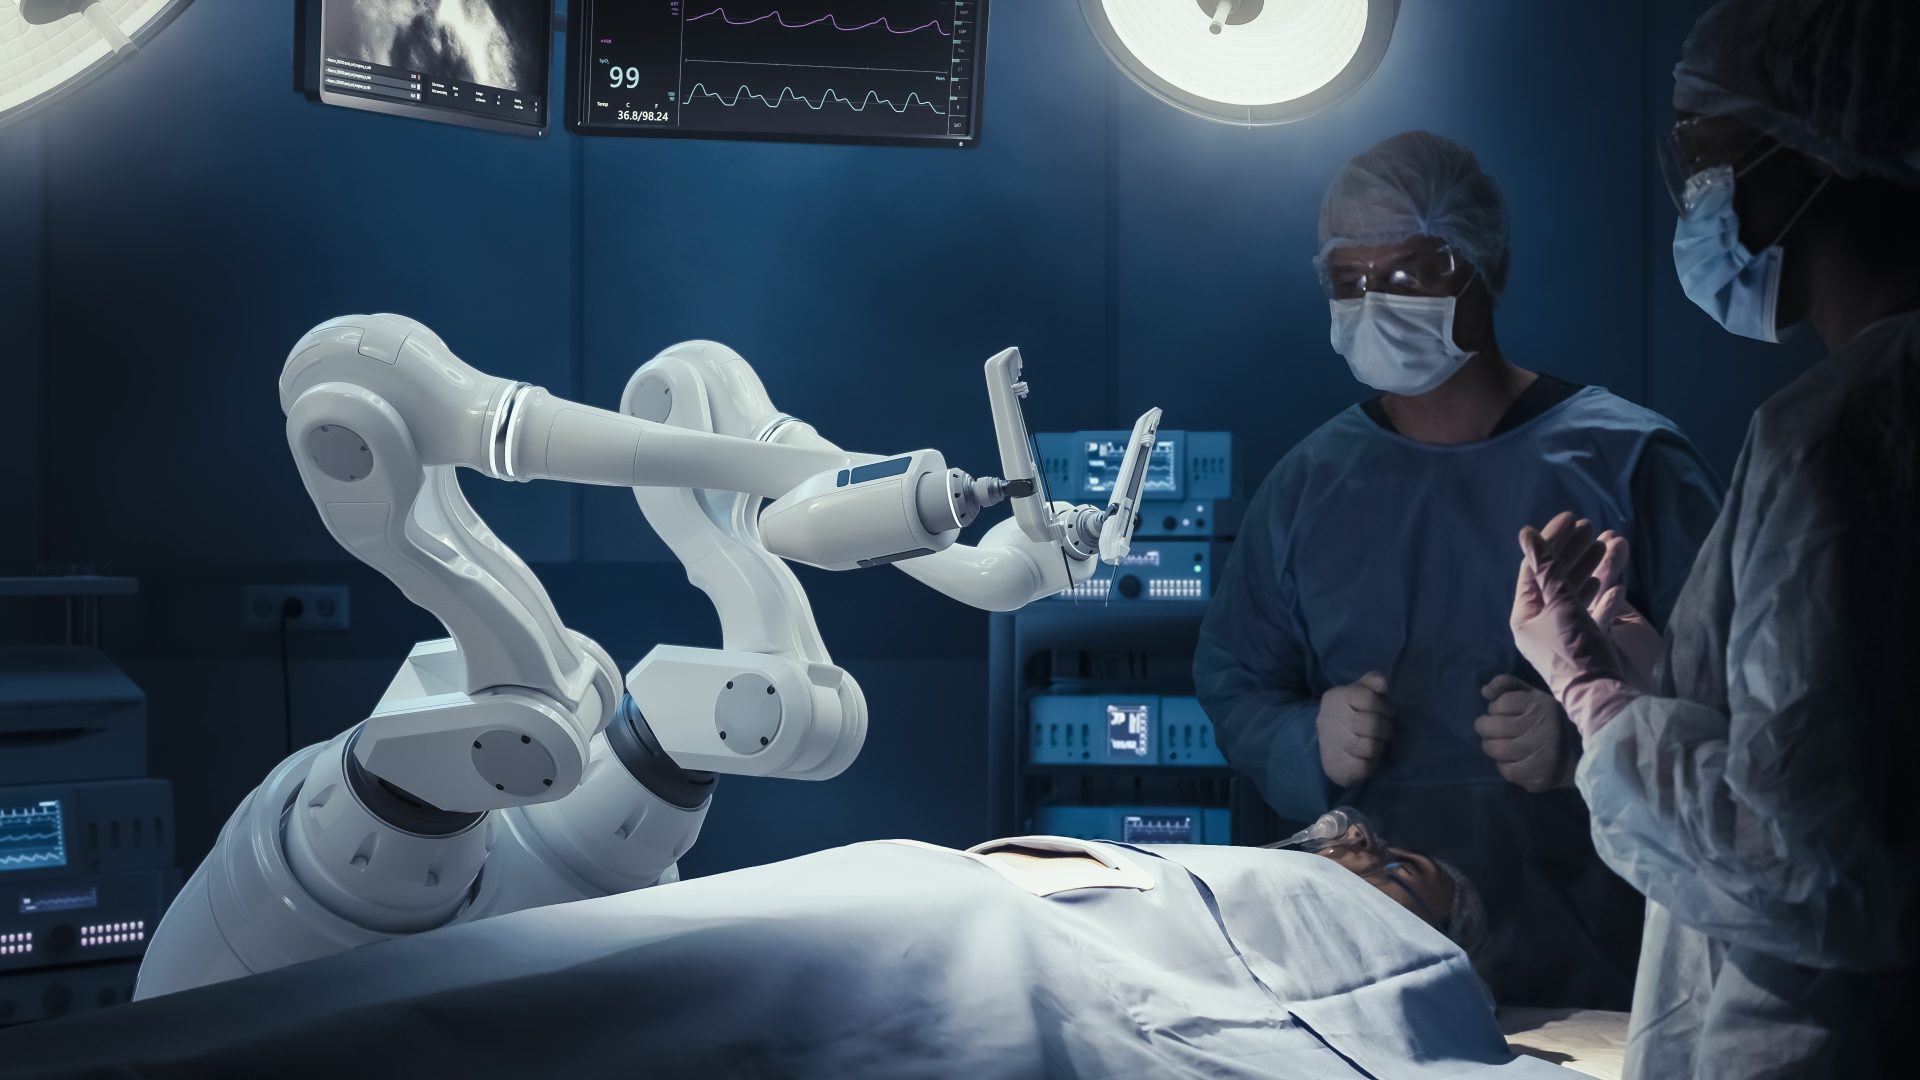 Robot chirurgical : du science-fiction à la réalité médicale avancée